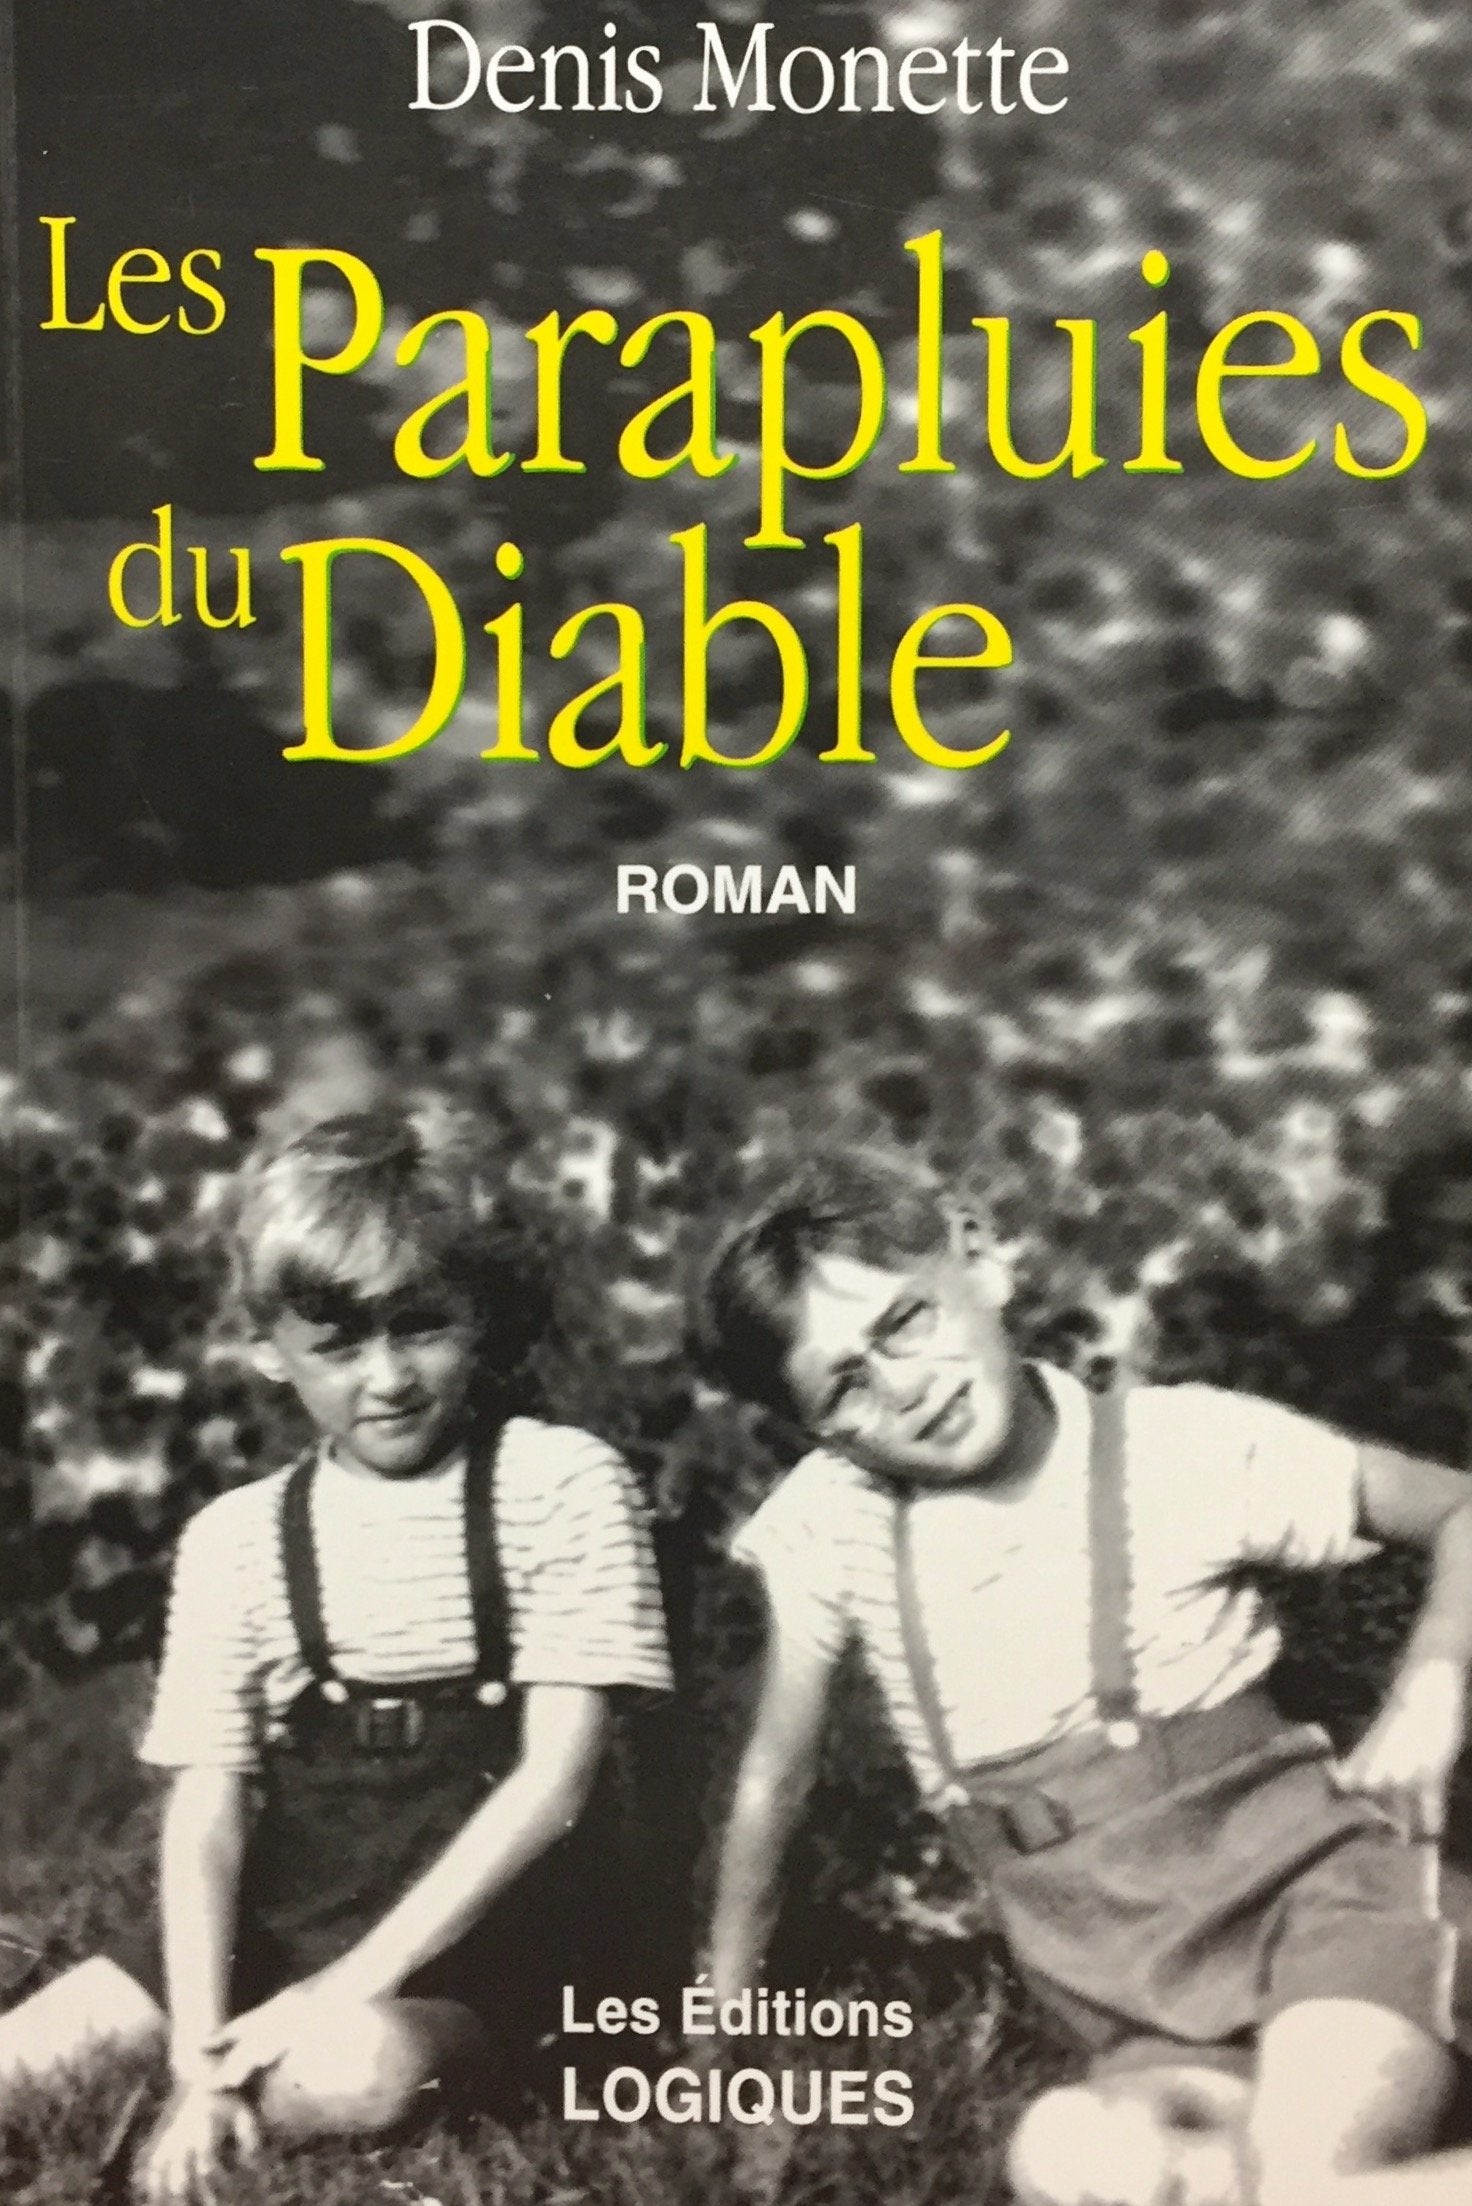 Livre ISBN 2893811329 Les parapluies du diable (Denis Monette)